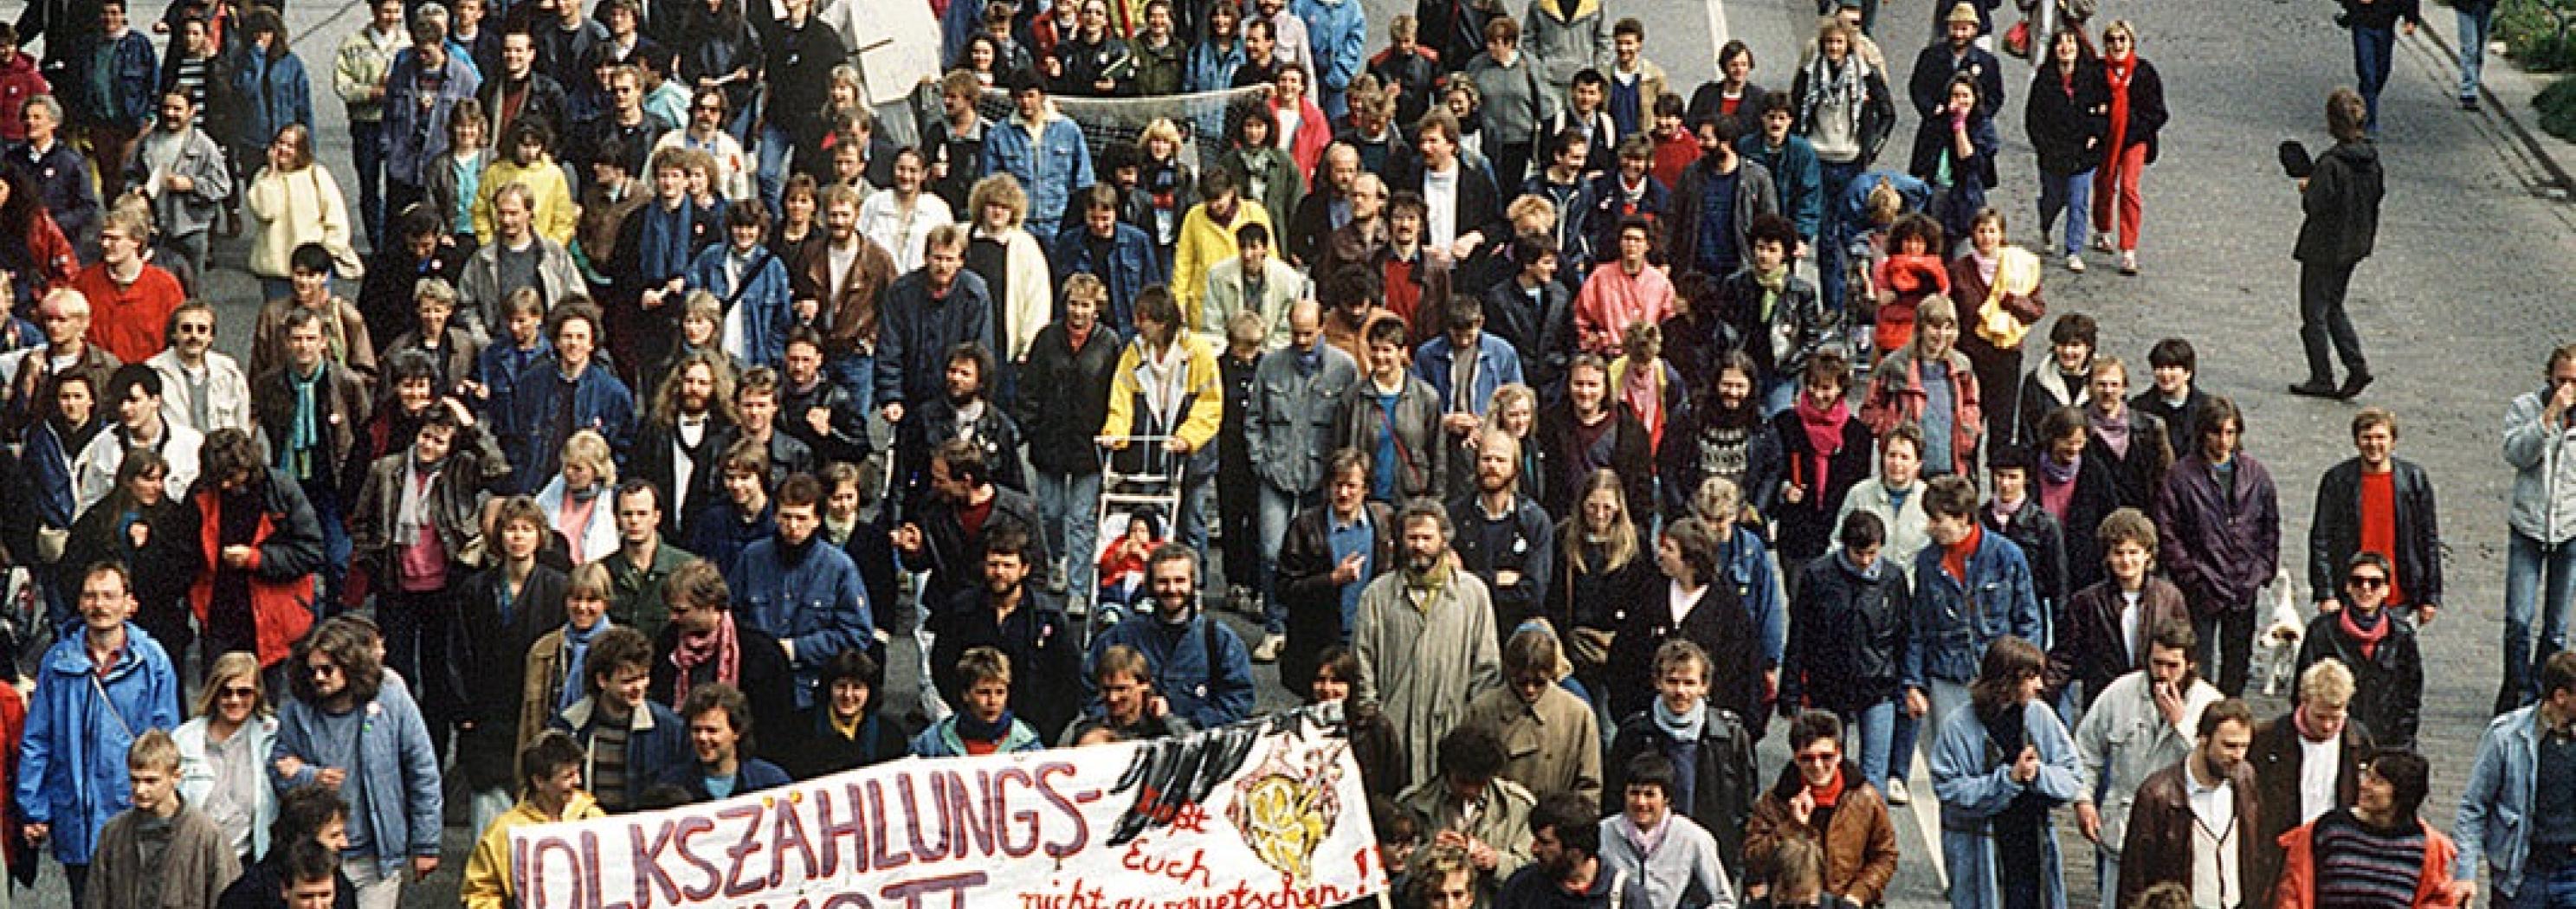 Protest gegen die Volkszählung 1983 in Deutschland